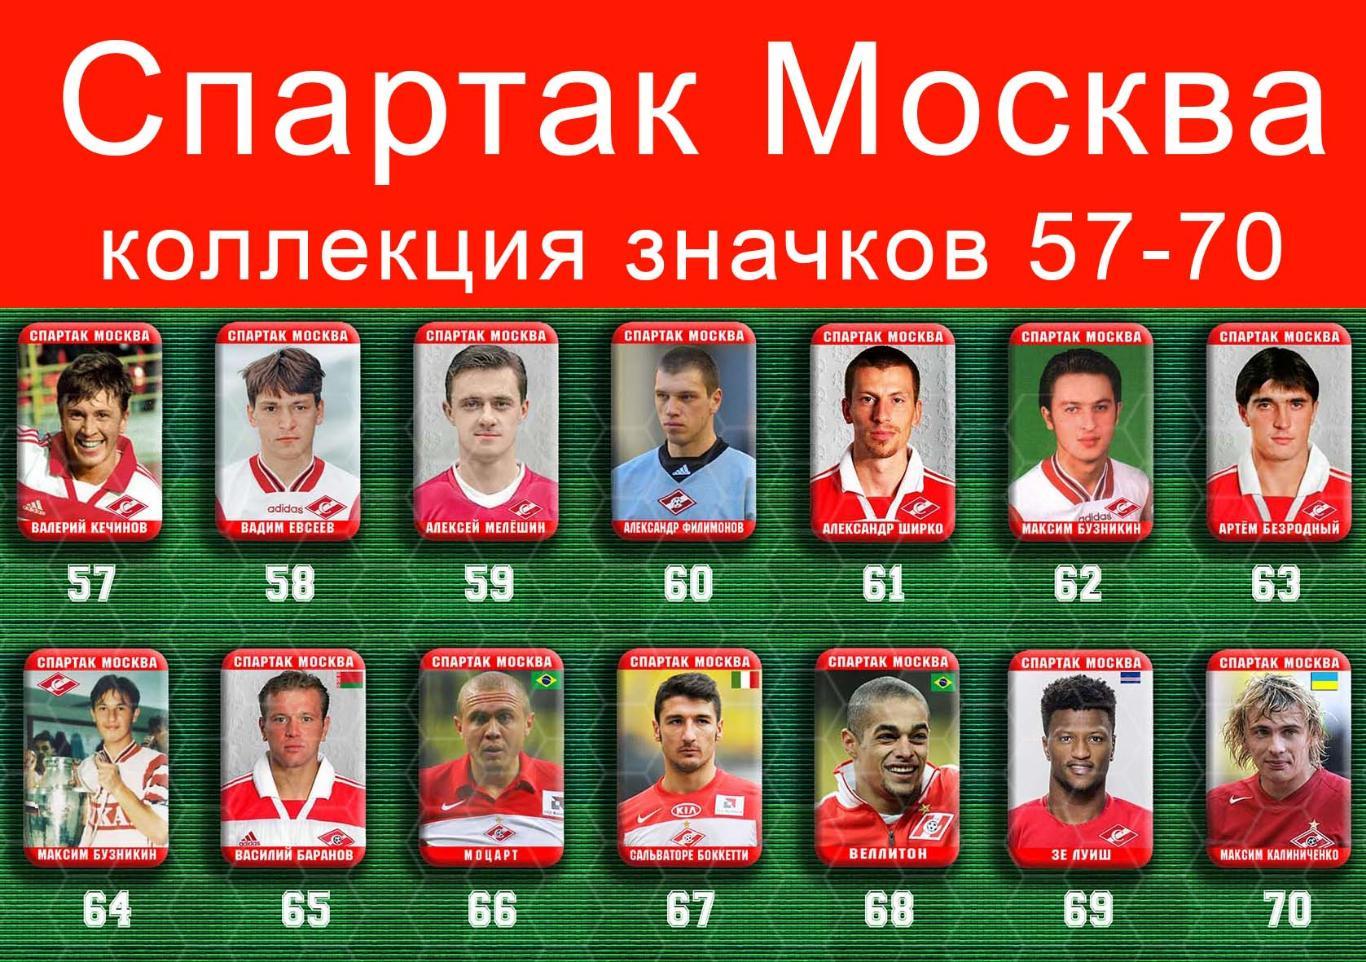 Спартак Москва 159 значков - 57-70